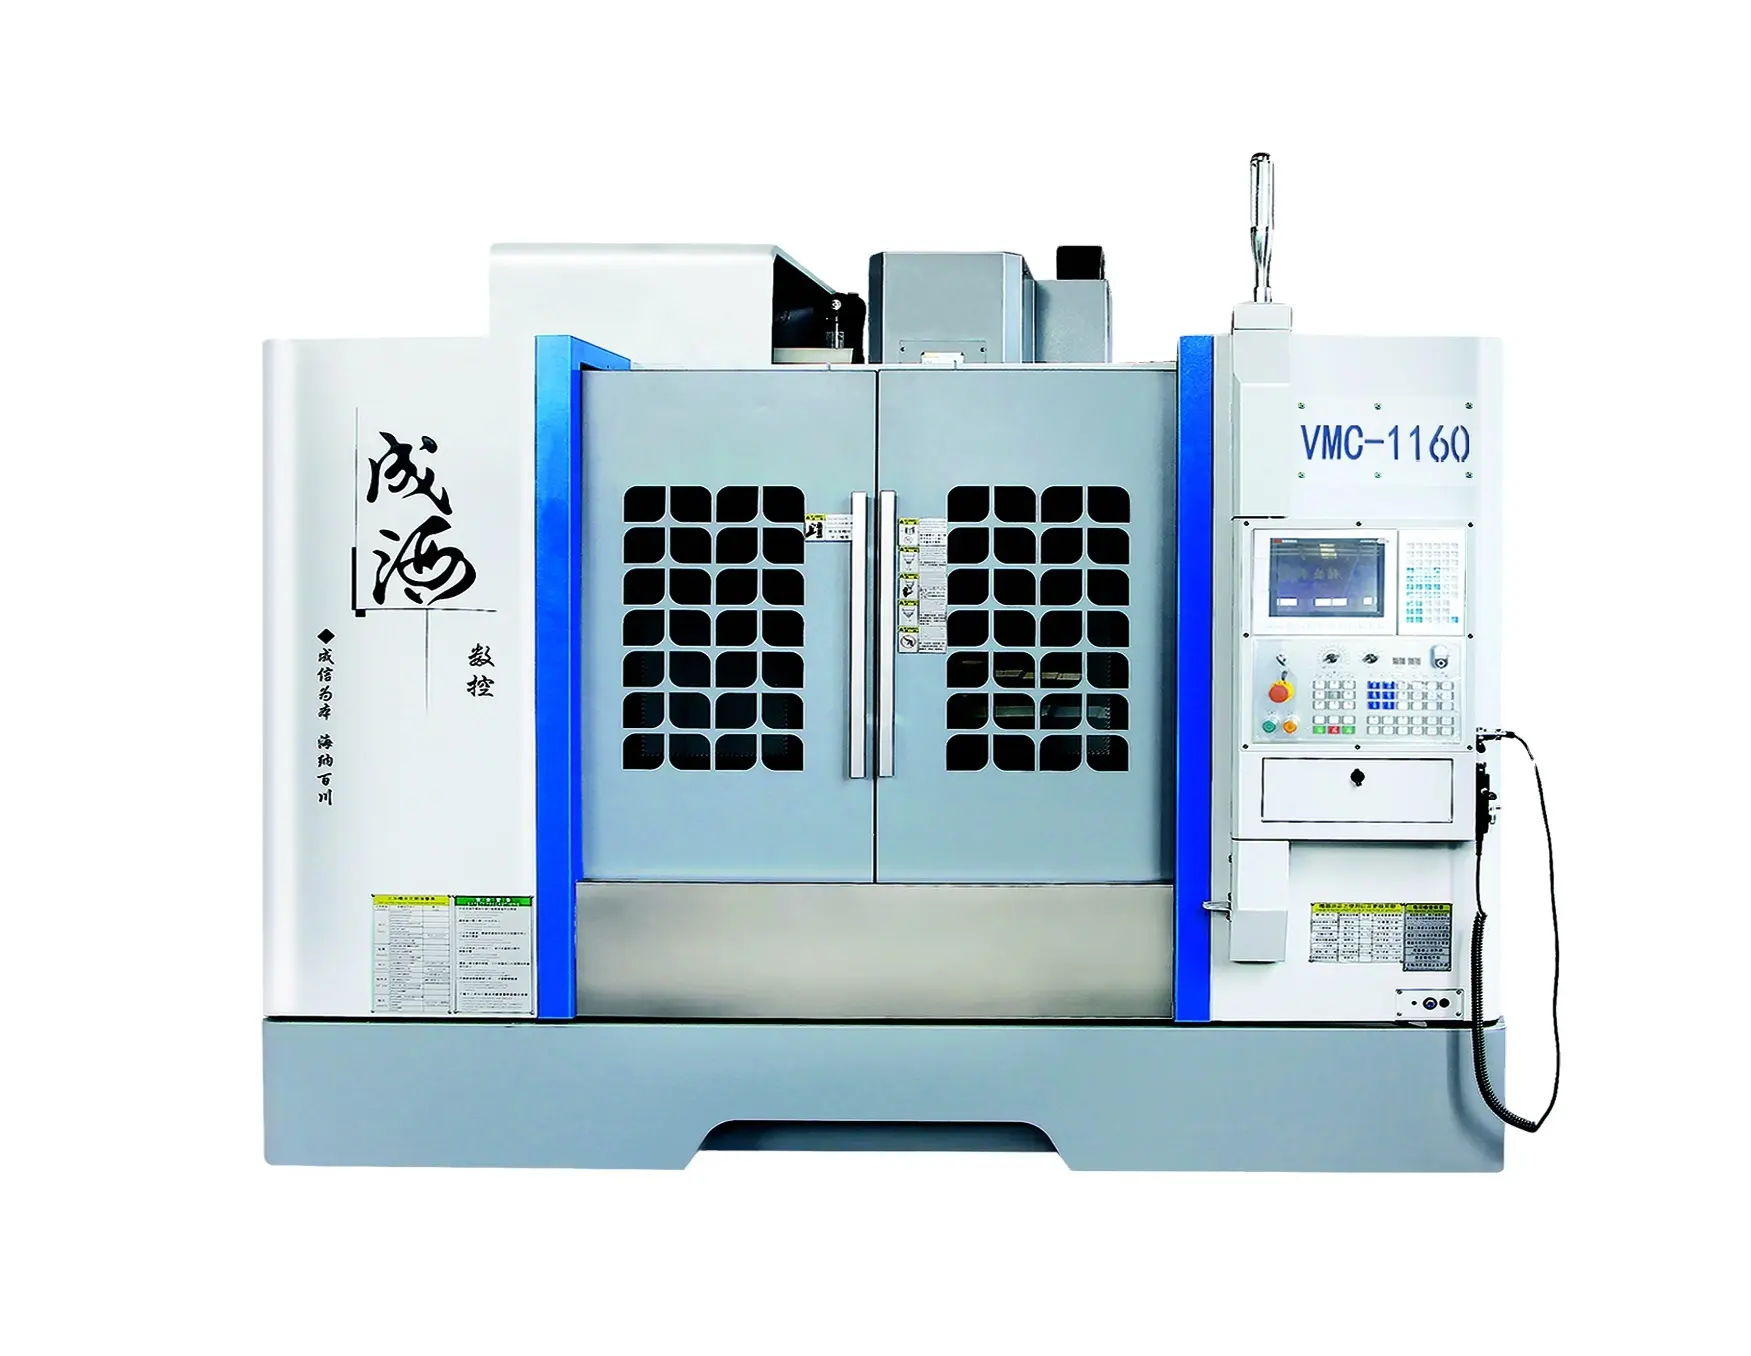 ماكينة طحن cnc V10 مركز صناعة القوالب العمودية vmc1160 جديد مطابق للمواصفات الأوروبية والأيزو